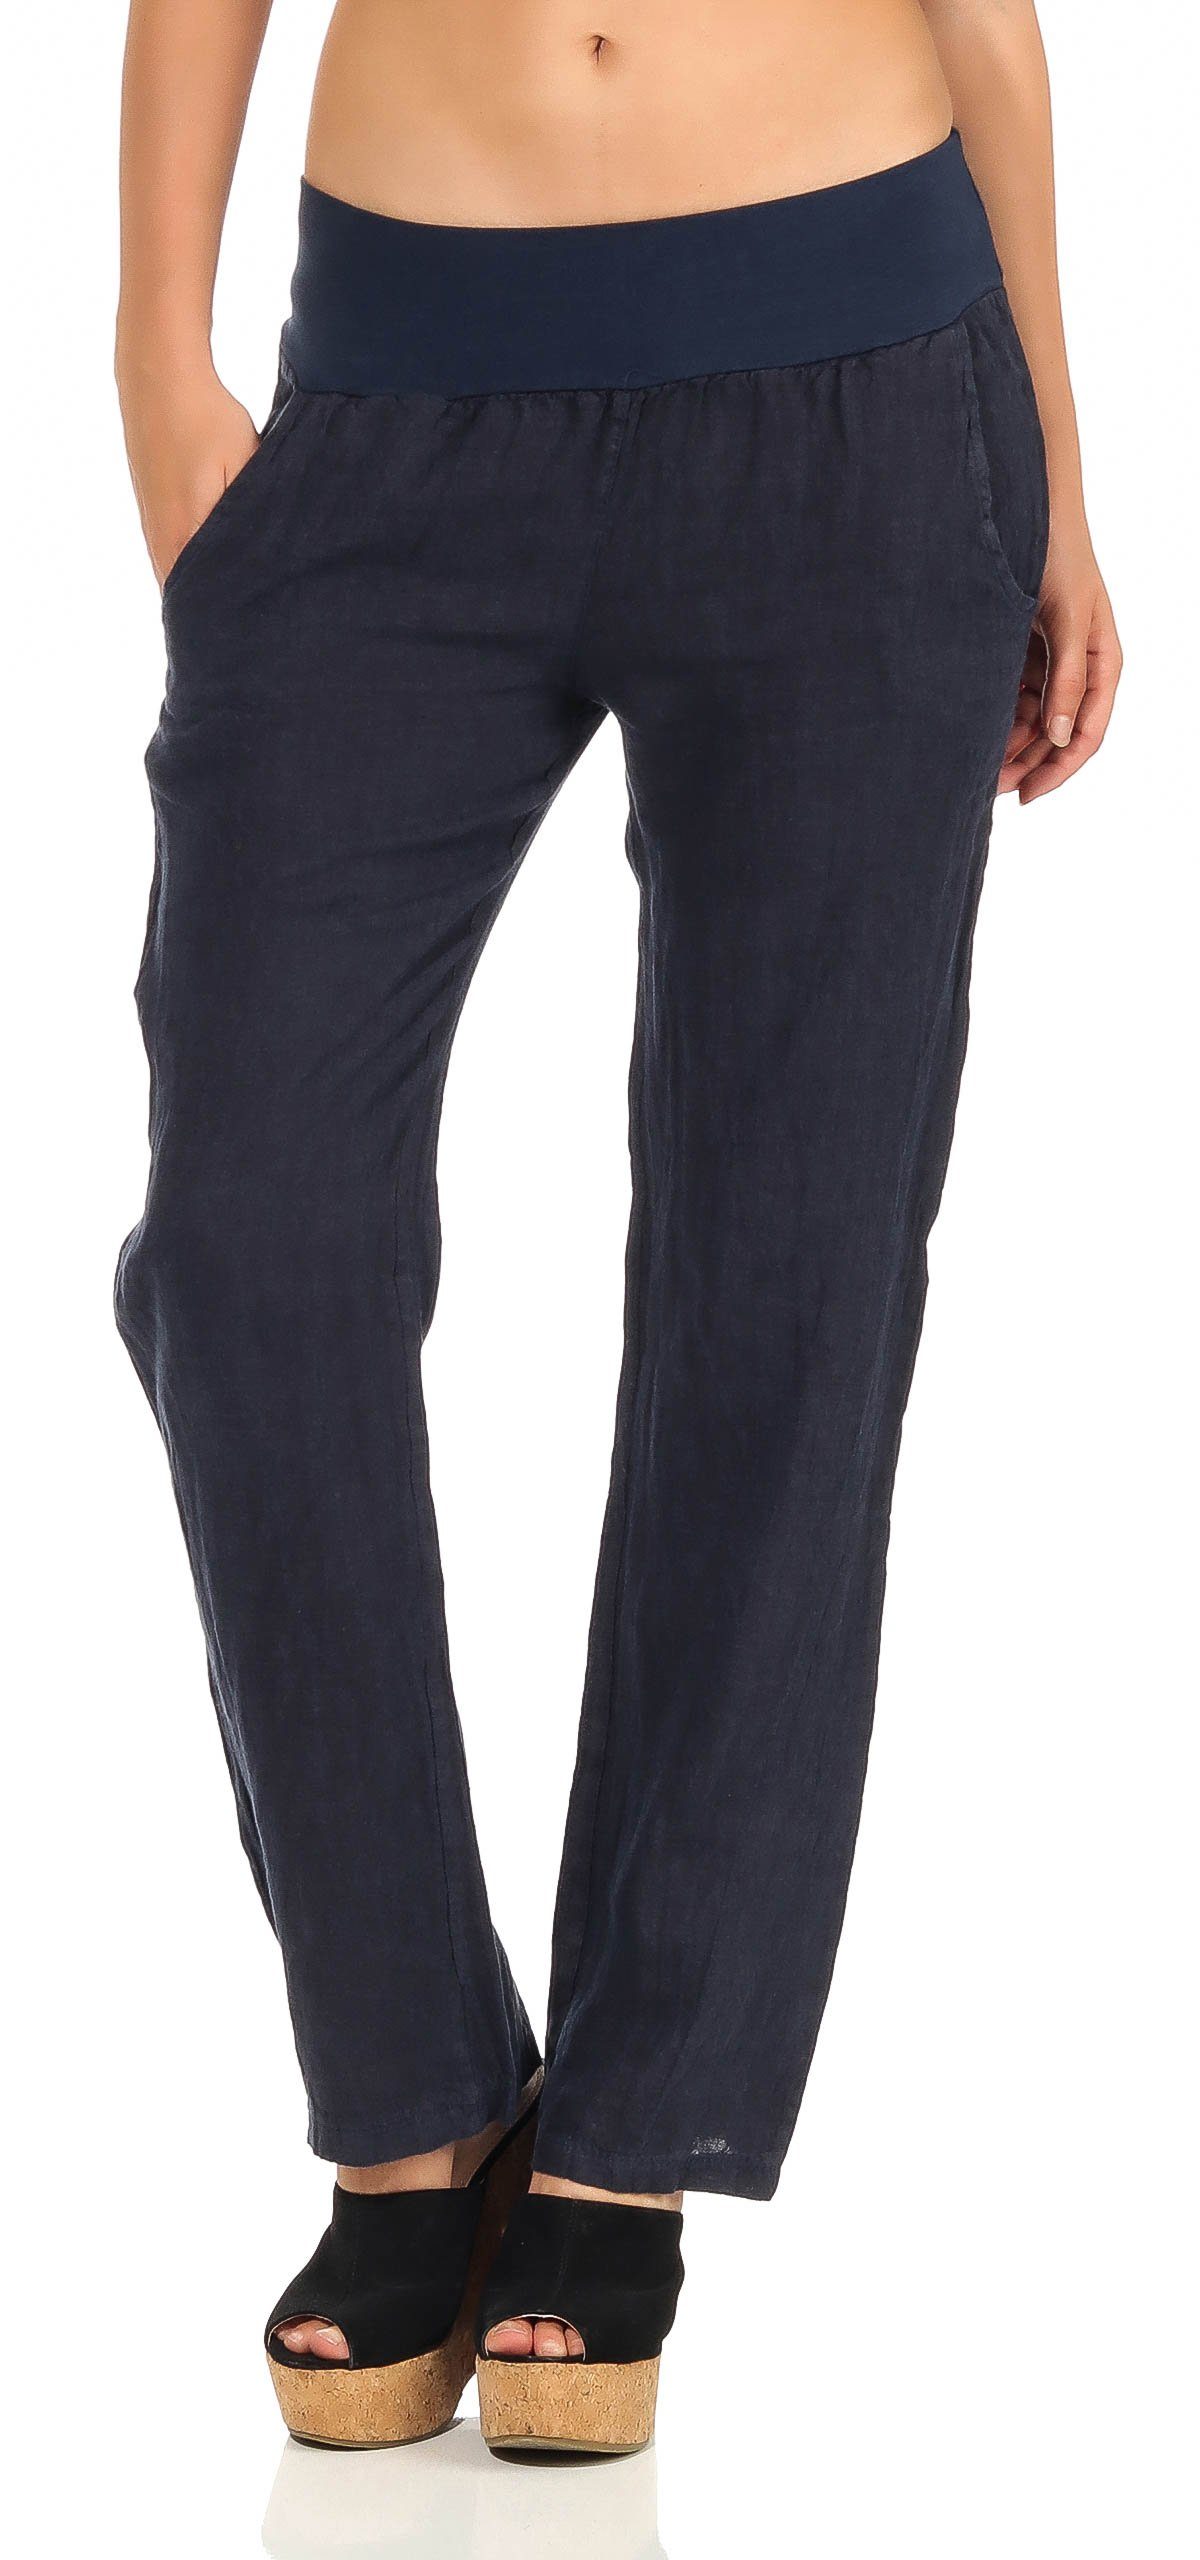 malito more than fashion Leinenhose 7792 leichte Stoffhose mit elastischem Bund dunkelblau | Weite Hosen